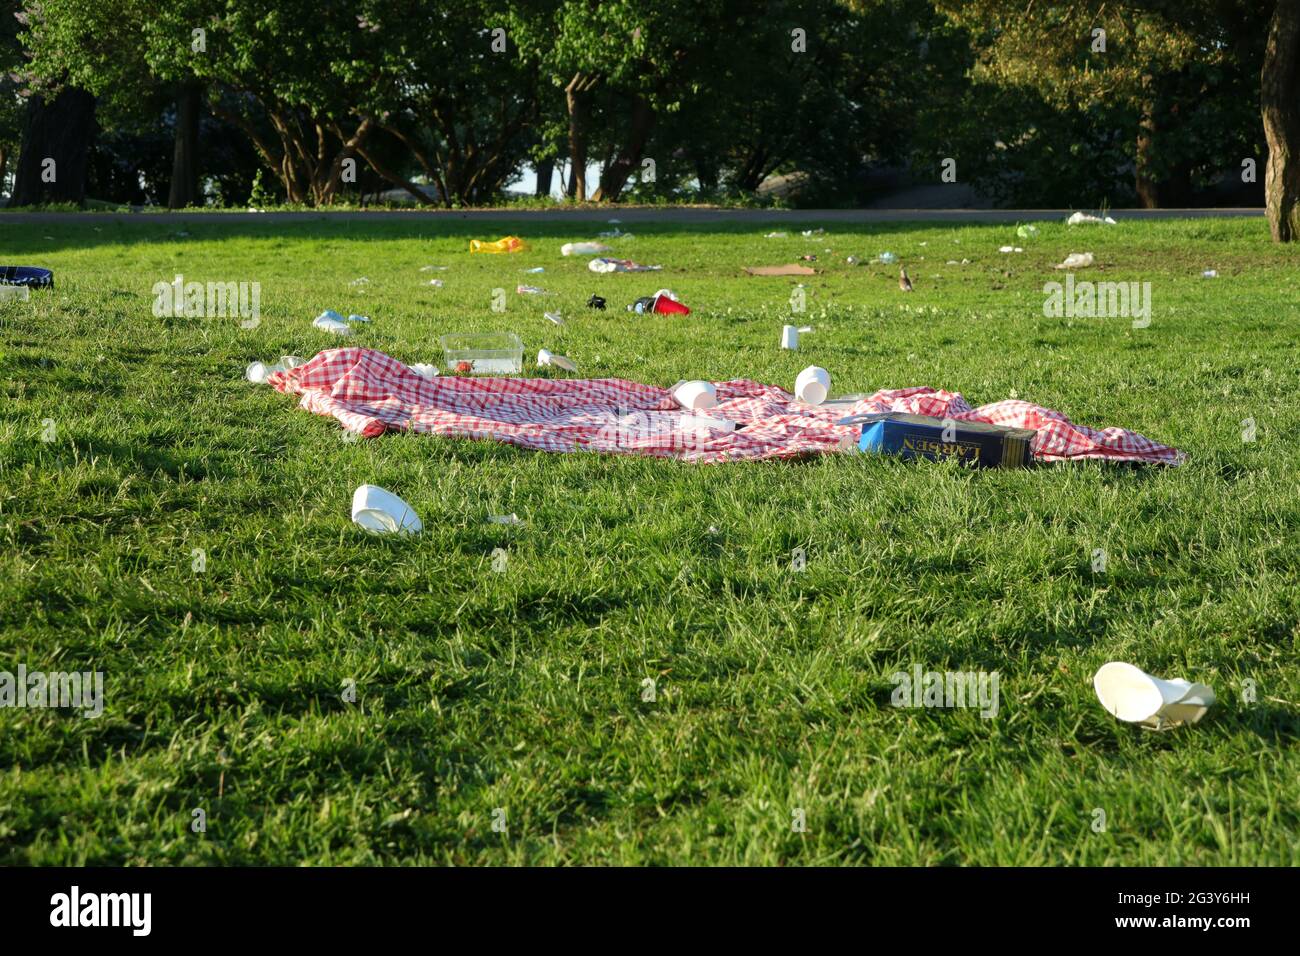 Picknickdecke, Müll und Dreck wurden im öffentlichen Park auf dem ganzen Gras hinterlassen. Kaivopuisto Park, Helsinki, Finnland. 6. Juni 2021. Stockfoto